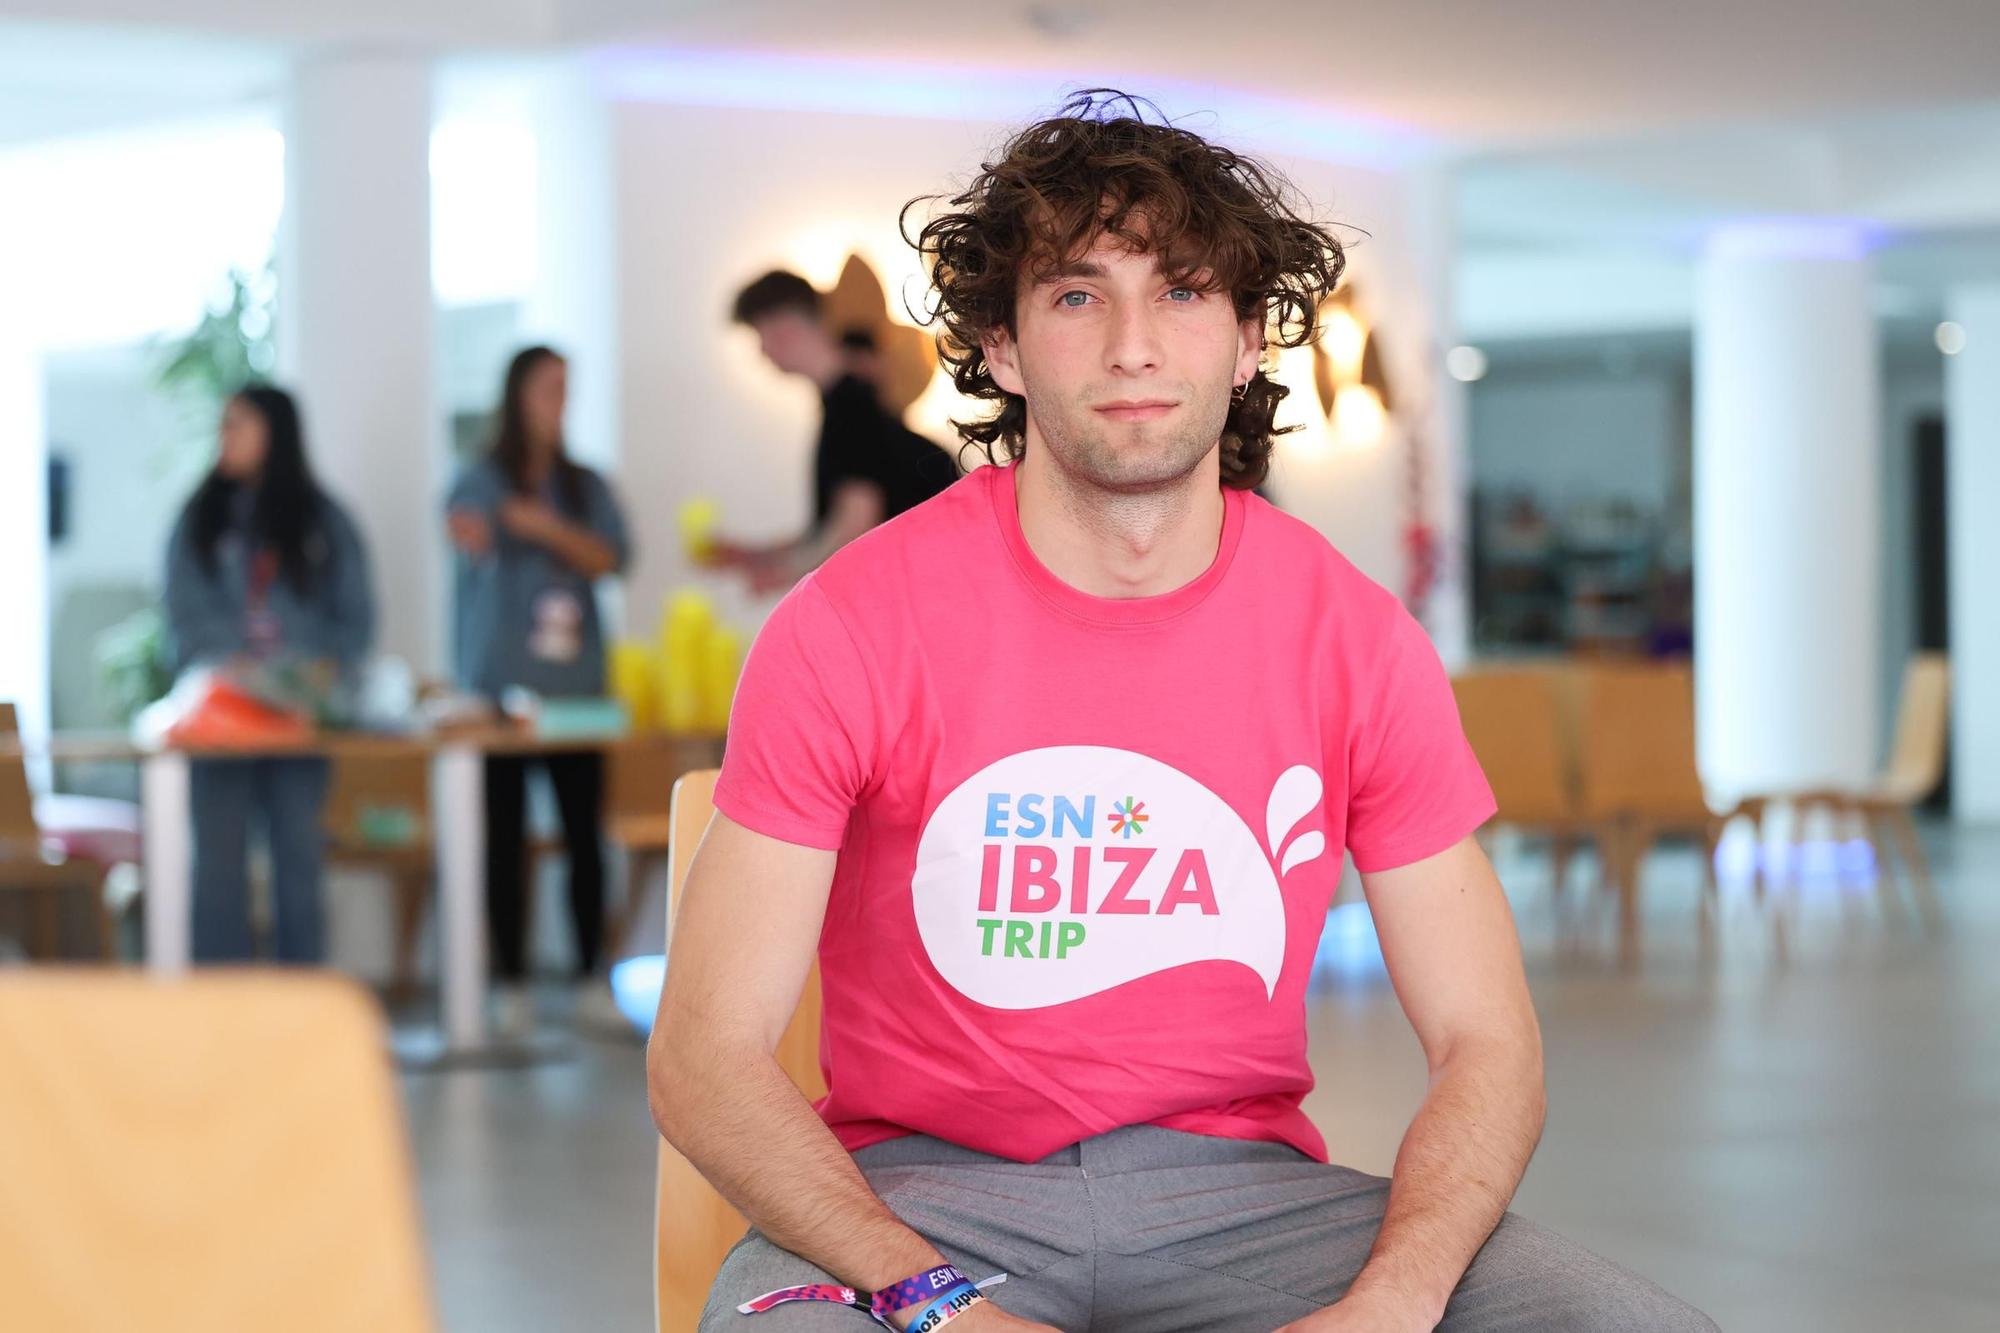 Visita de 2.000 Erasmus a Ibiza: "Me encanta la vibra del lugar"